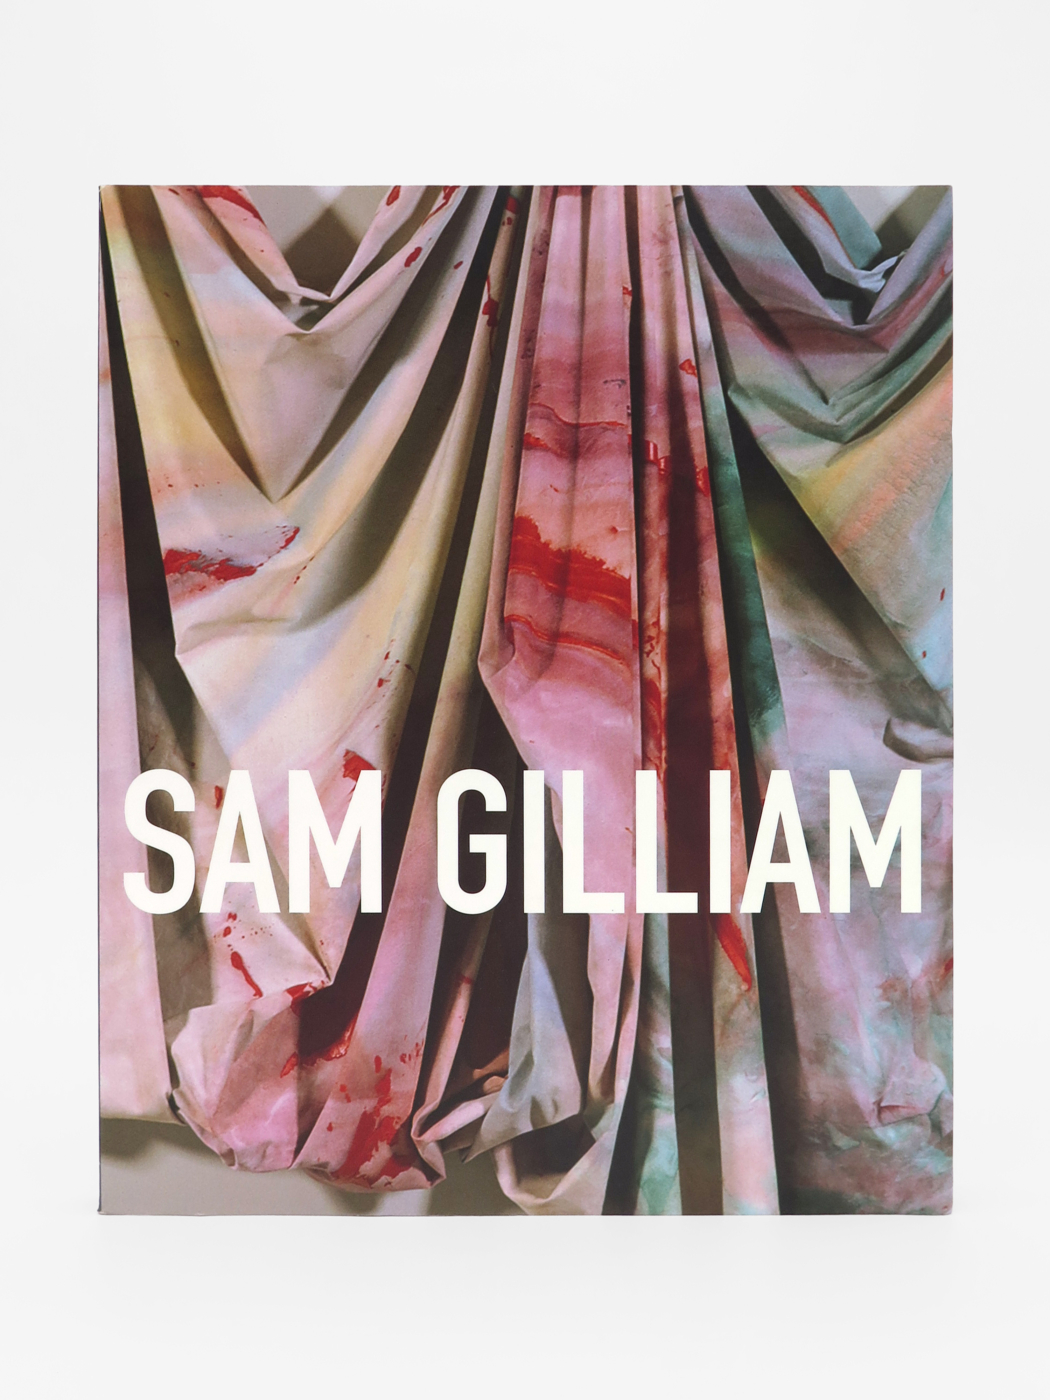 Sam Gilliam, a retrospective